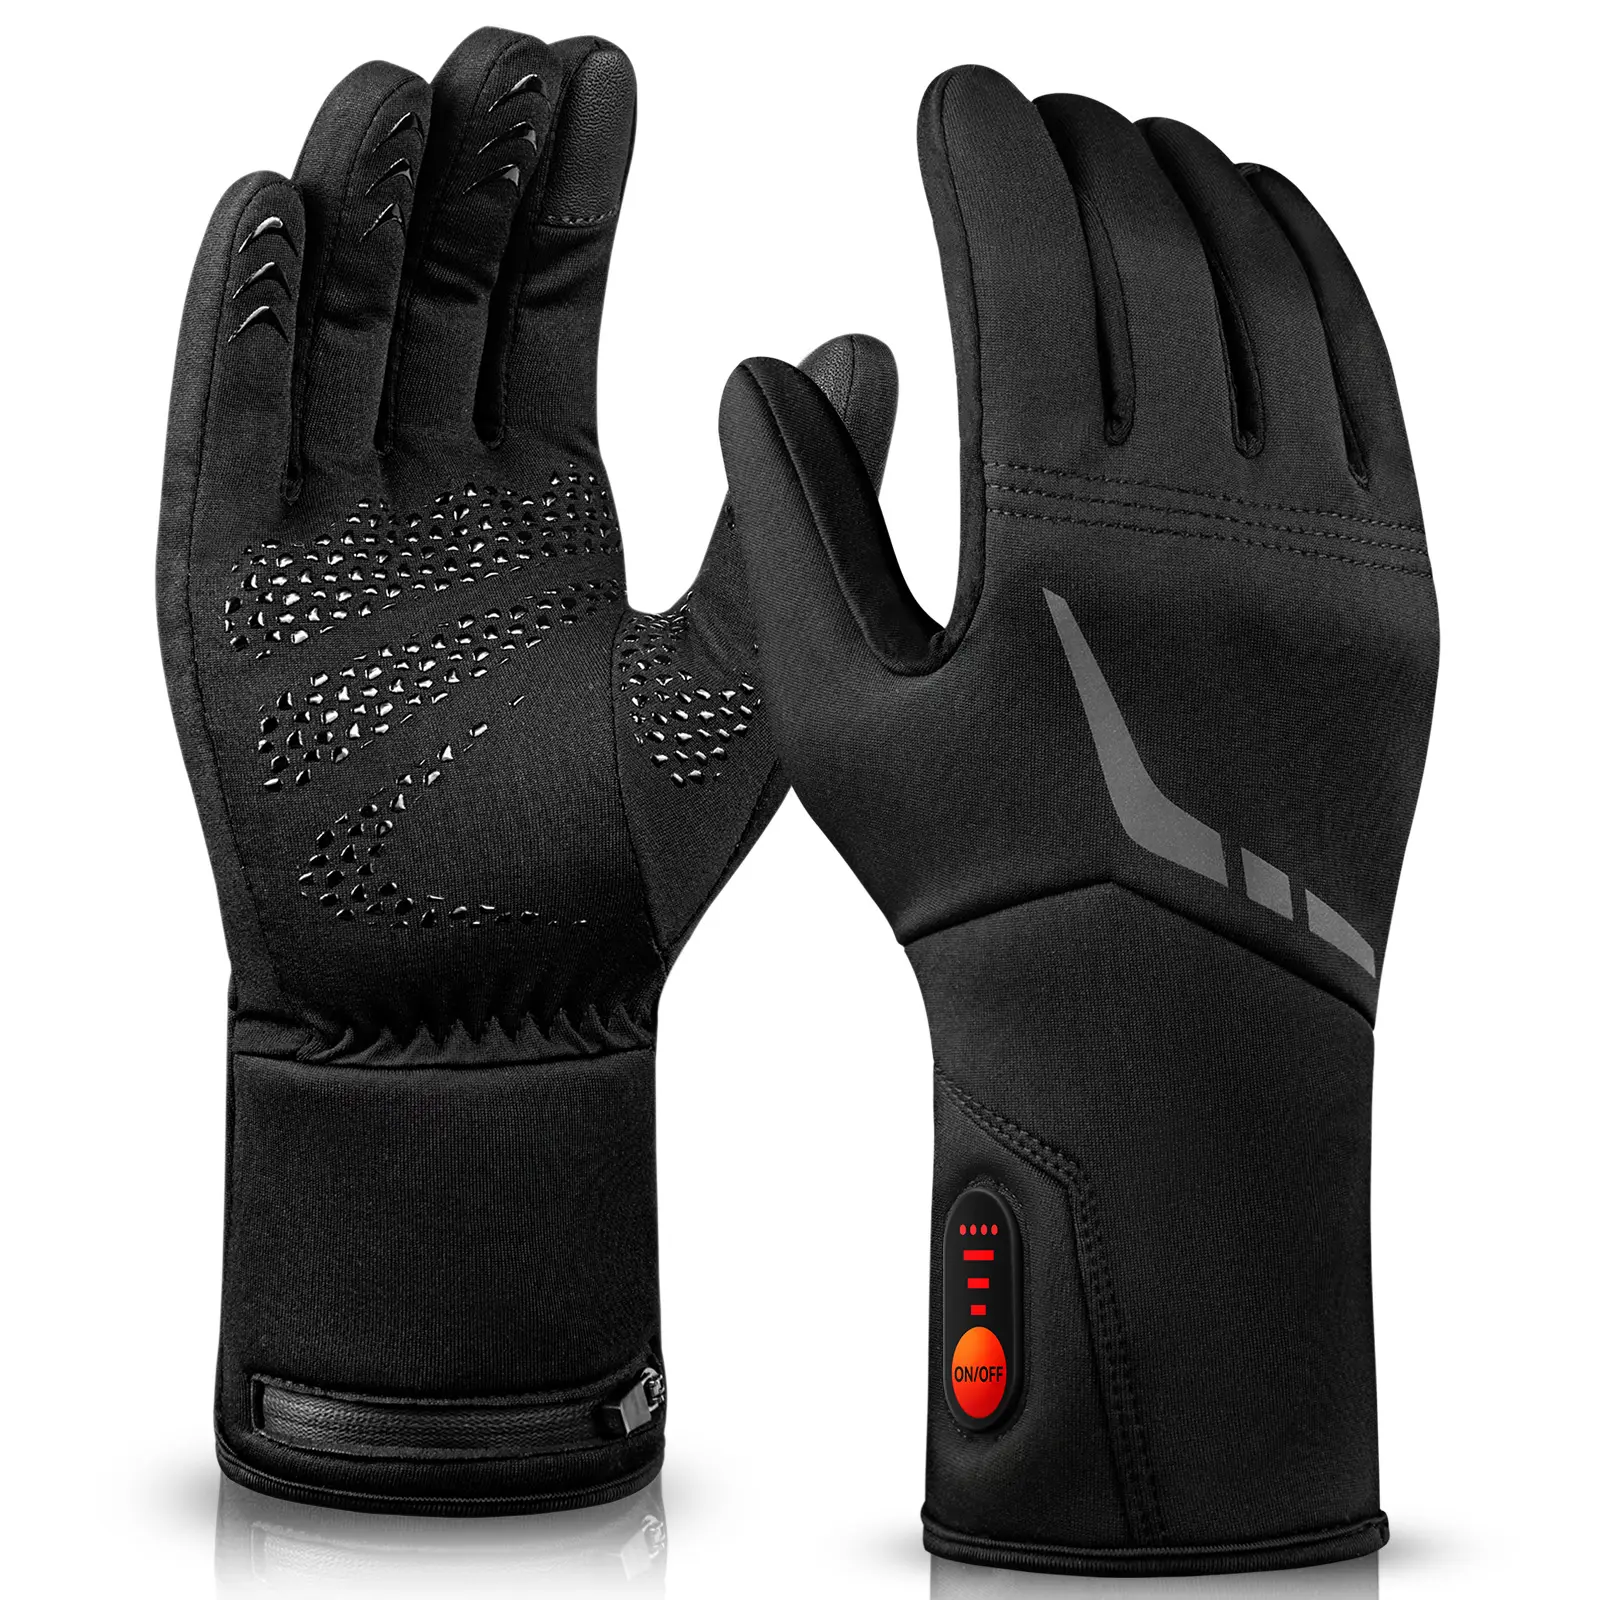 Li-ion 7.4V elektrikli şarj edilebilir pil ısıtmalı parmak eldiven erkek kadın kış kayak motosiklet yürüyüş eldiven isı için